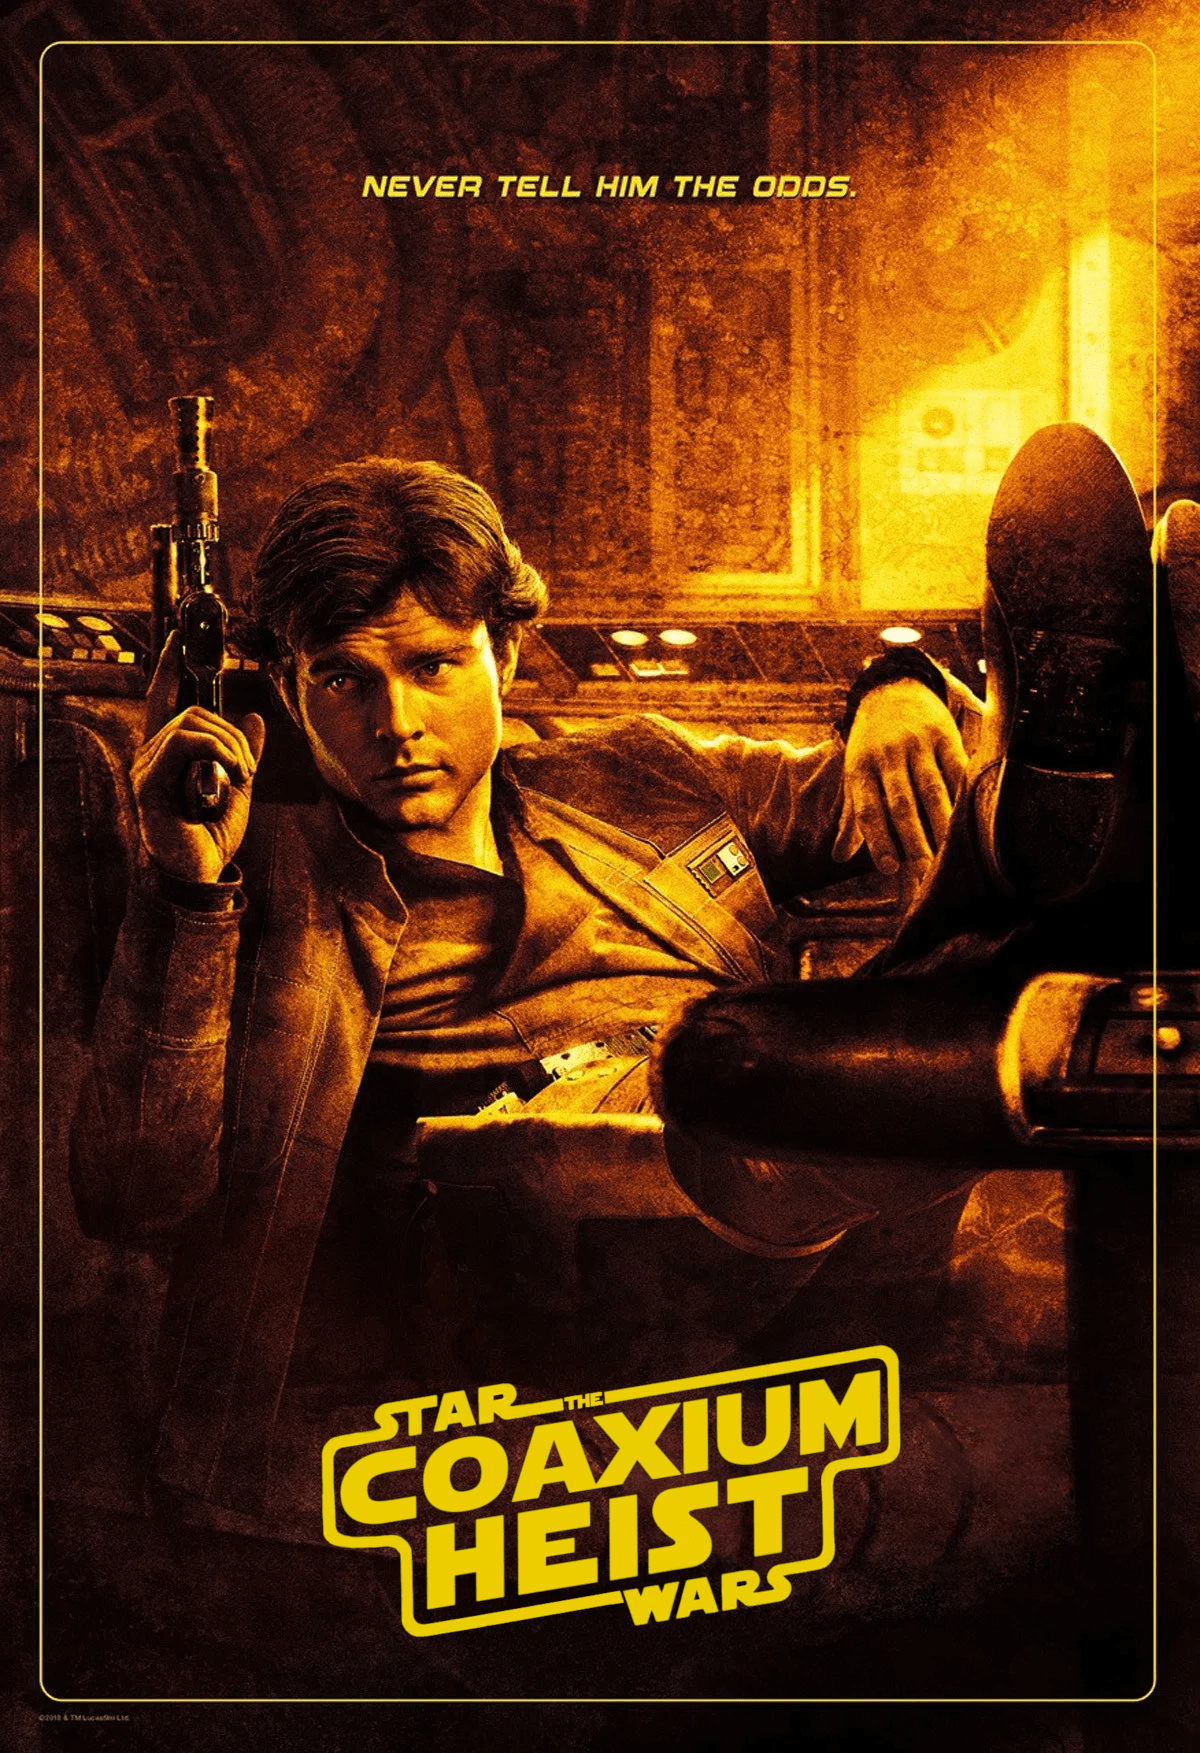 Star Wars: The Coaxium Heist